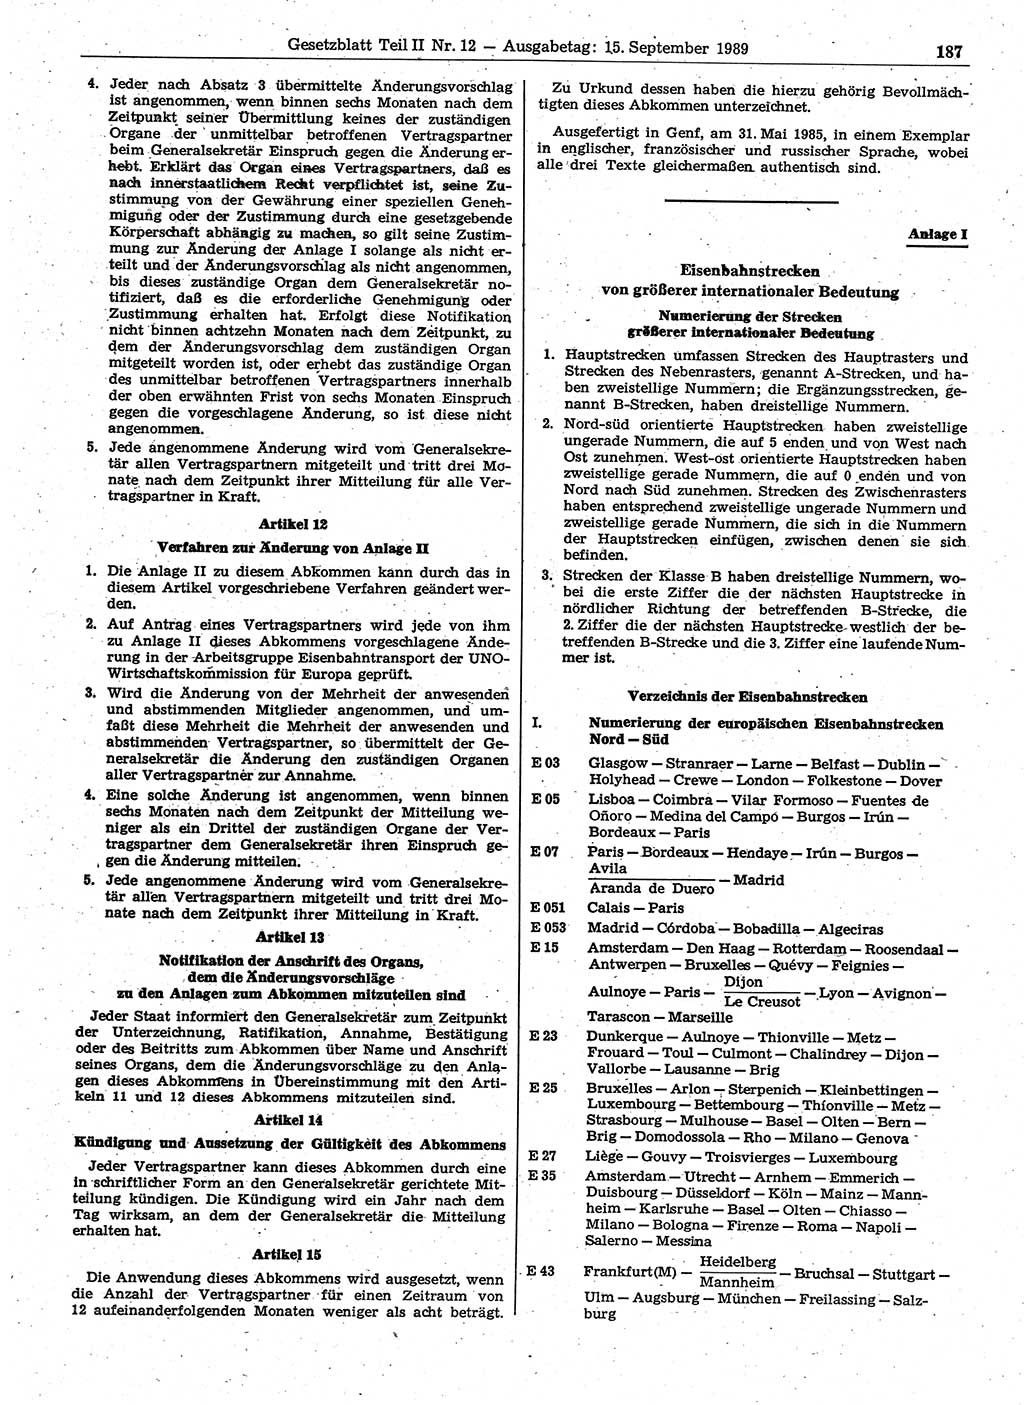 Gesetzblatt (GBl.) der Deutschen Demokratischen Republik (DDR) Teil ⅠⅠ 1989, Seite 187 (GBl. DDR ⅠⅠ 1989, S. 187)